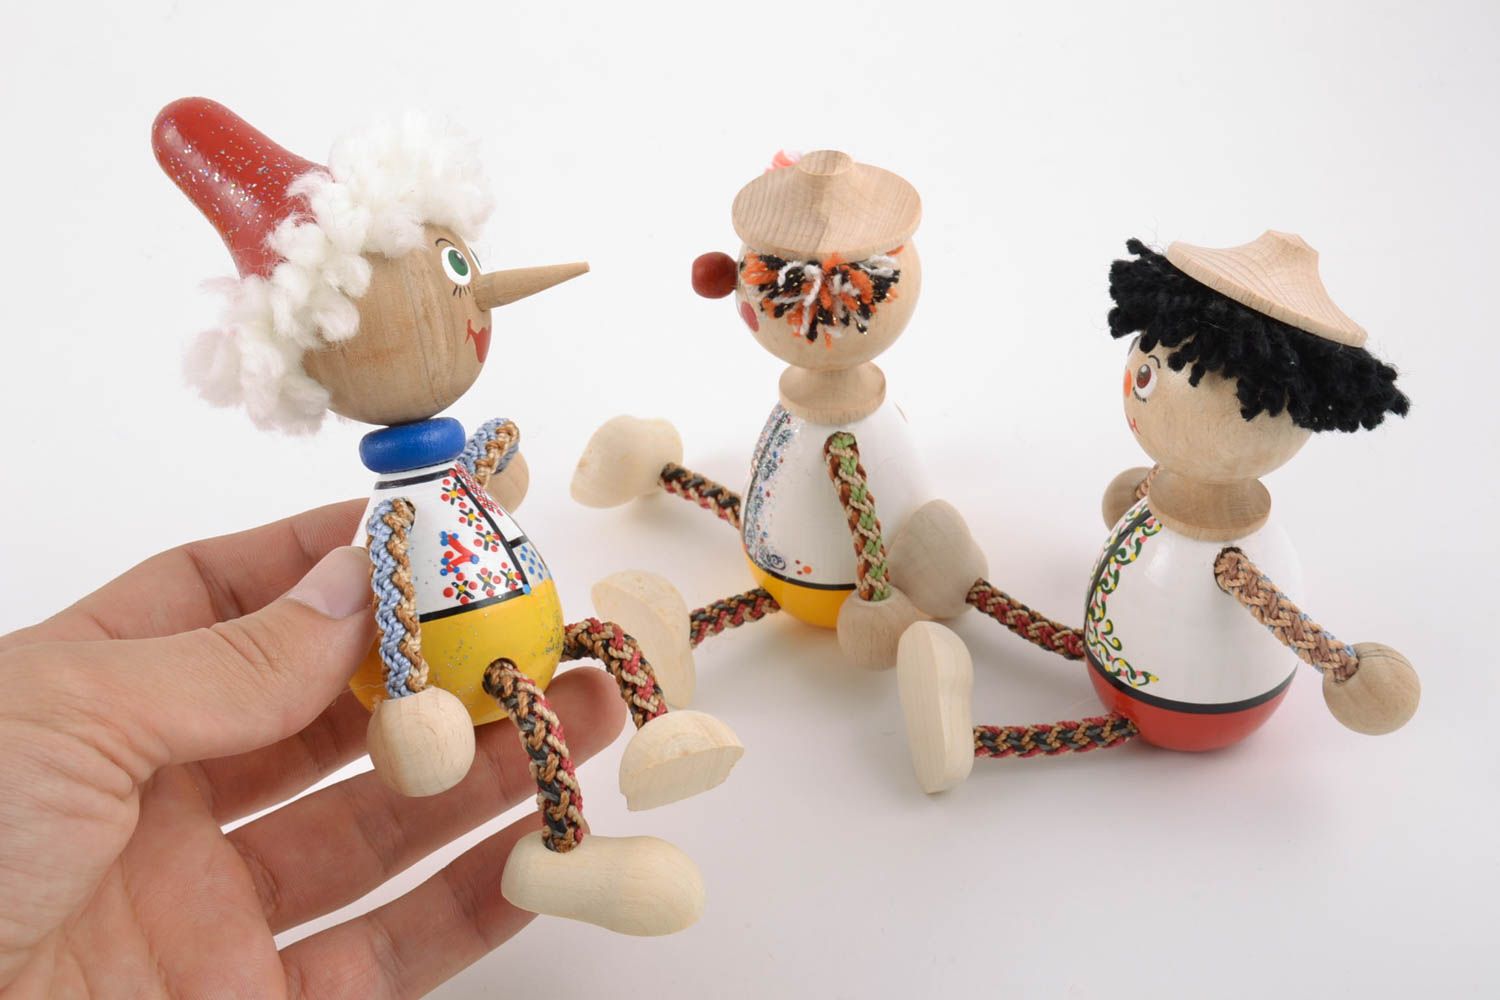 Авторские деревянные эко игрушки 3 штуки расписанные красками ручной работы  фото 2